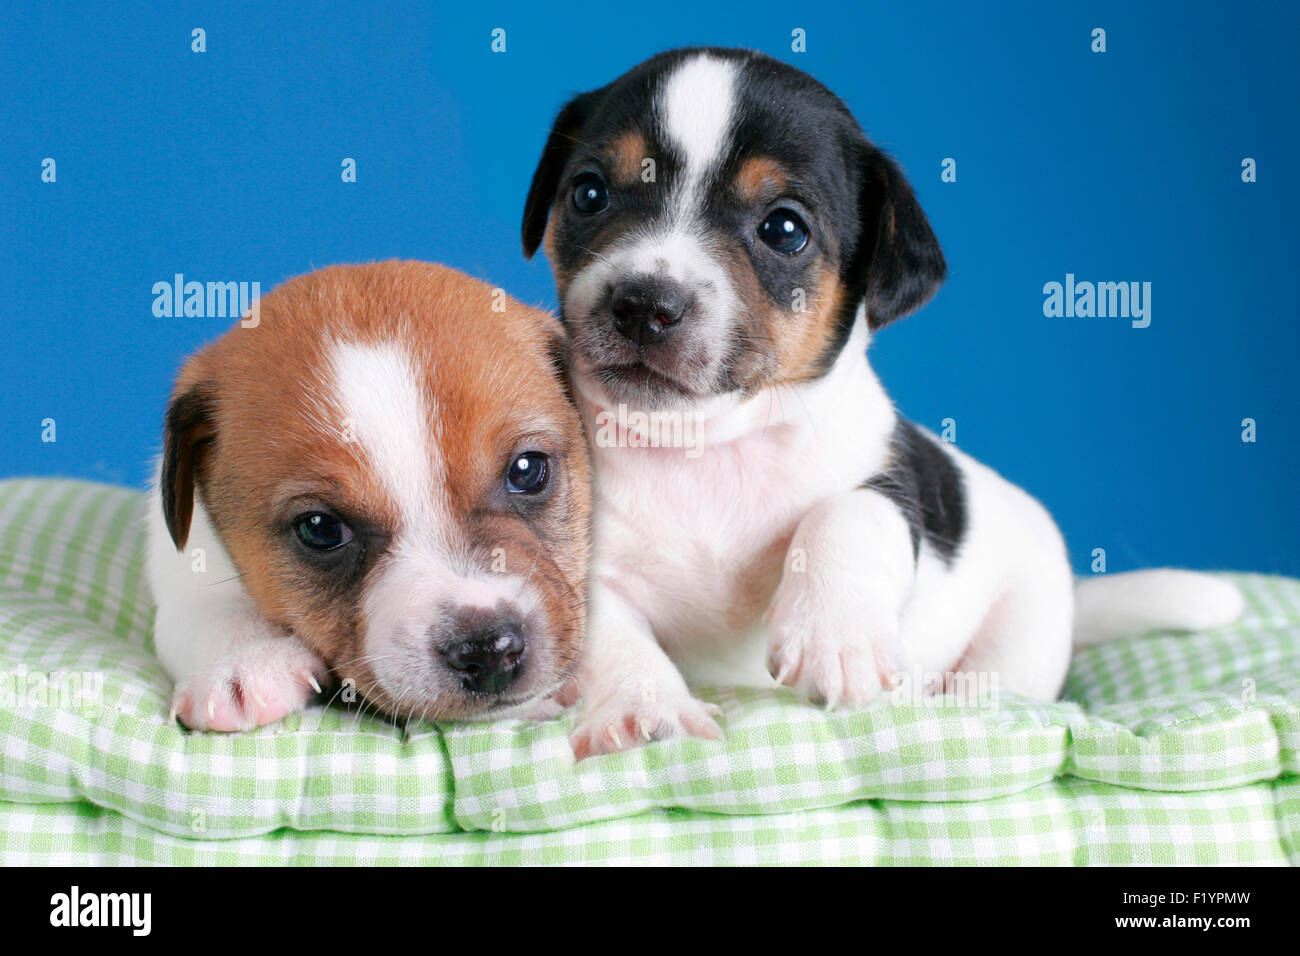 Deux chiots Jack Russell Terrier Studio couverture photo contre fond bleu Allemagne Banque D'Images